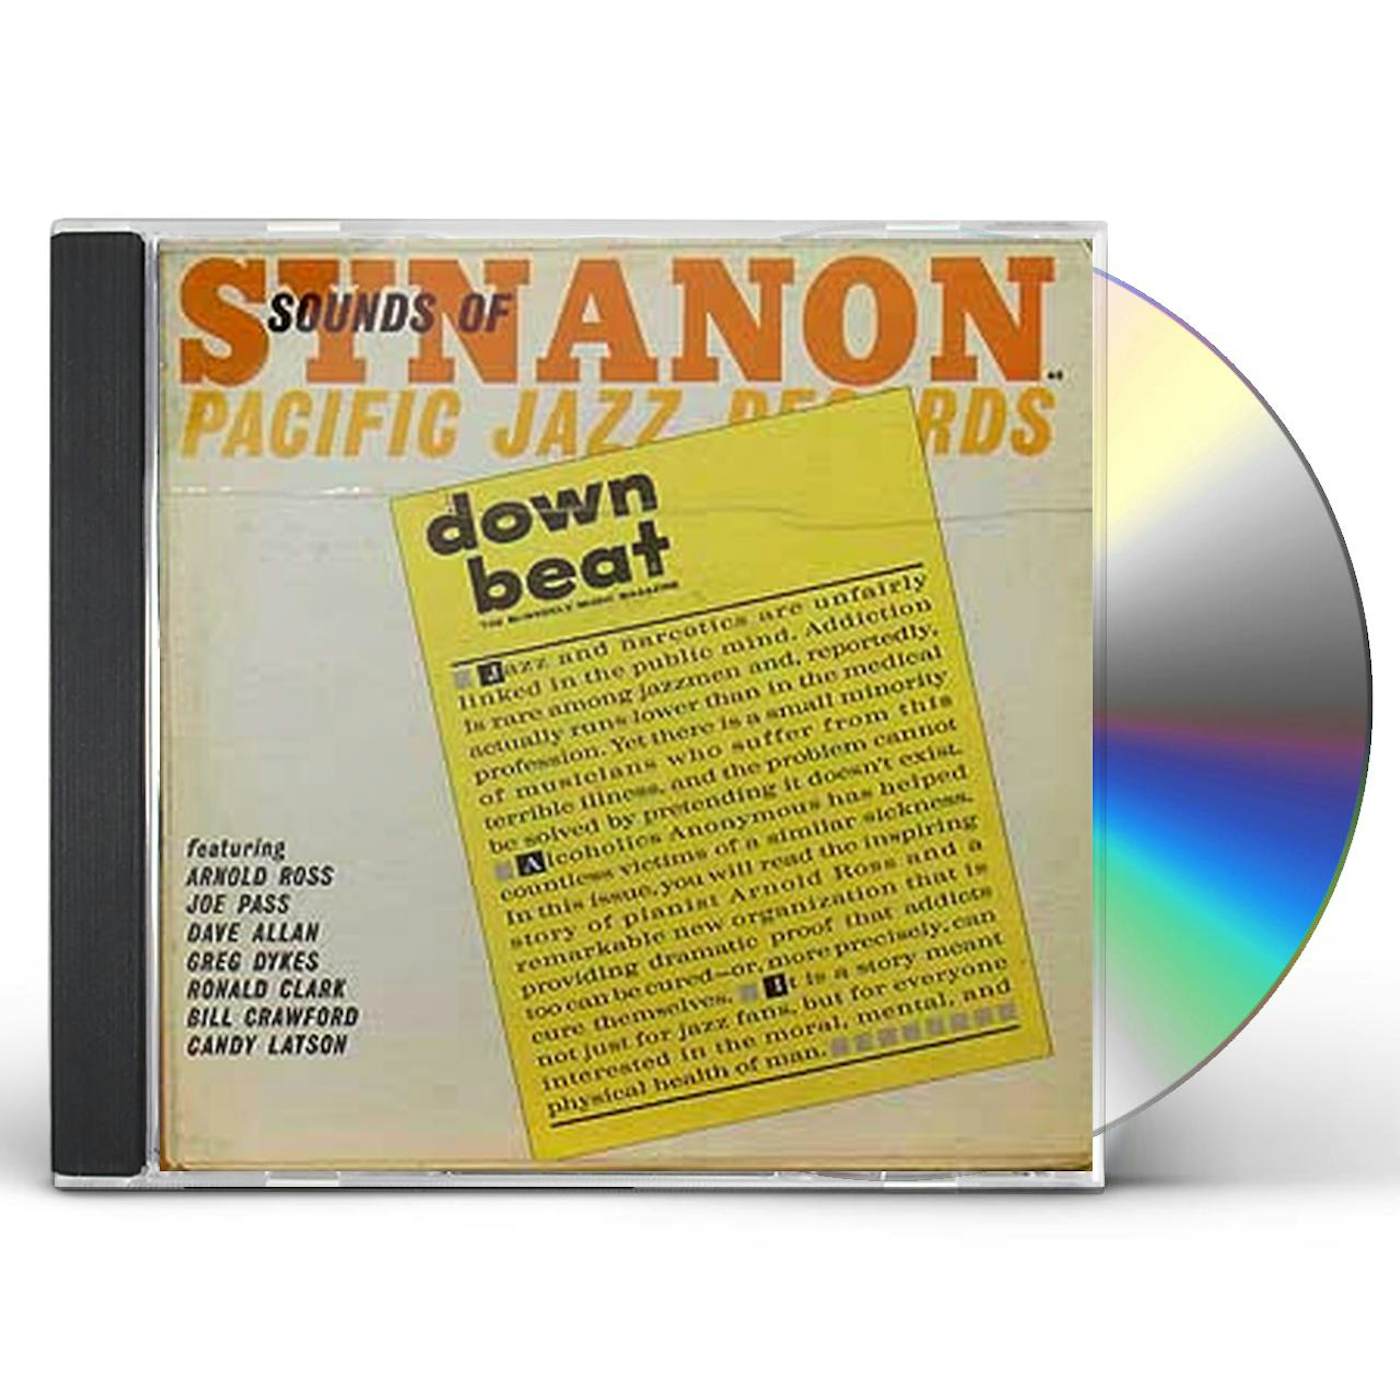 Joe Pass SOUNDS OF SYNANON CD